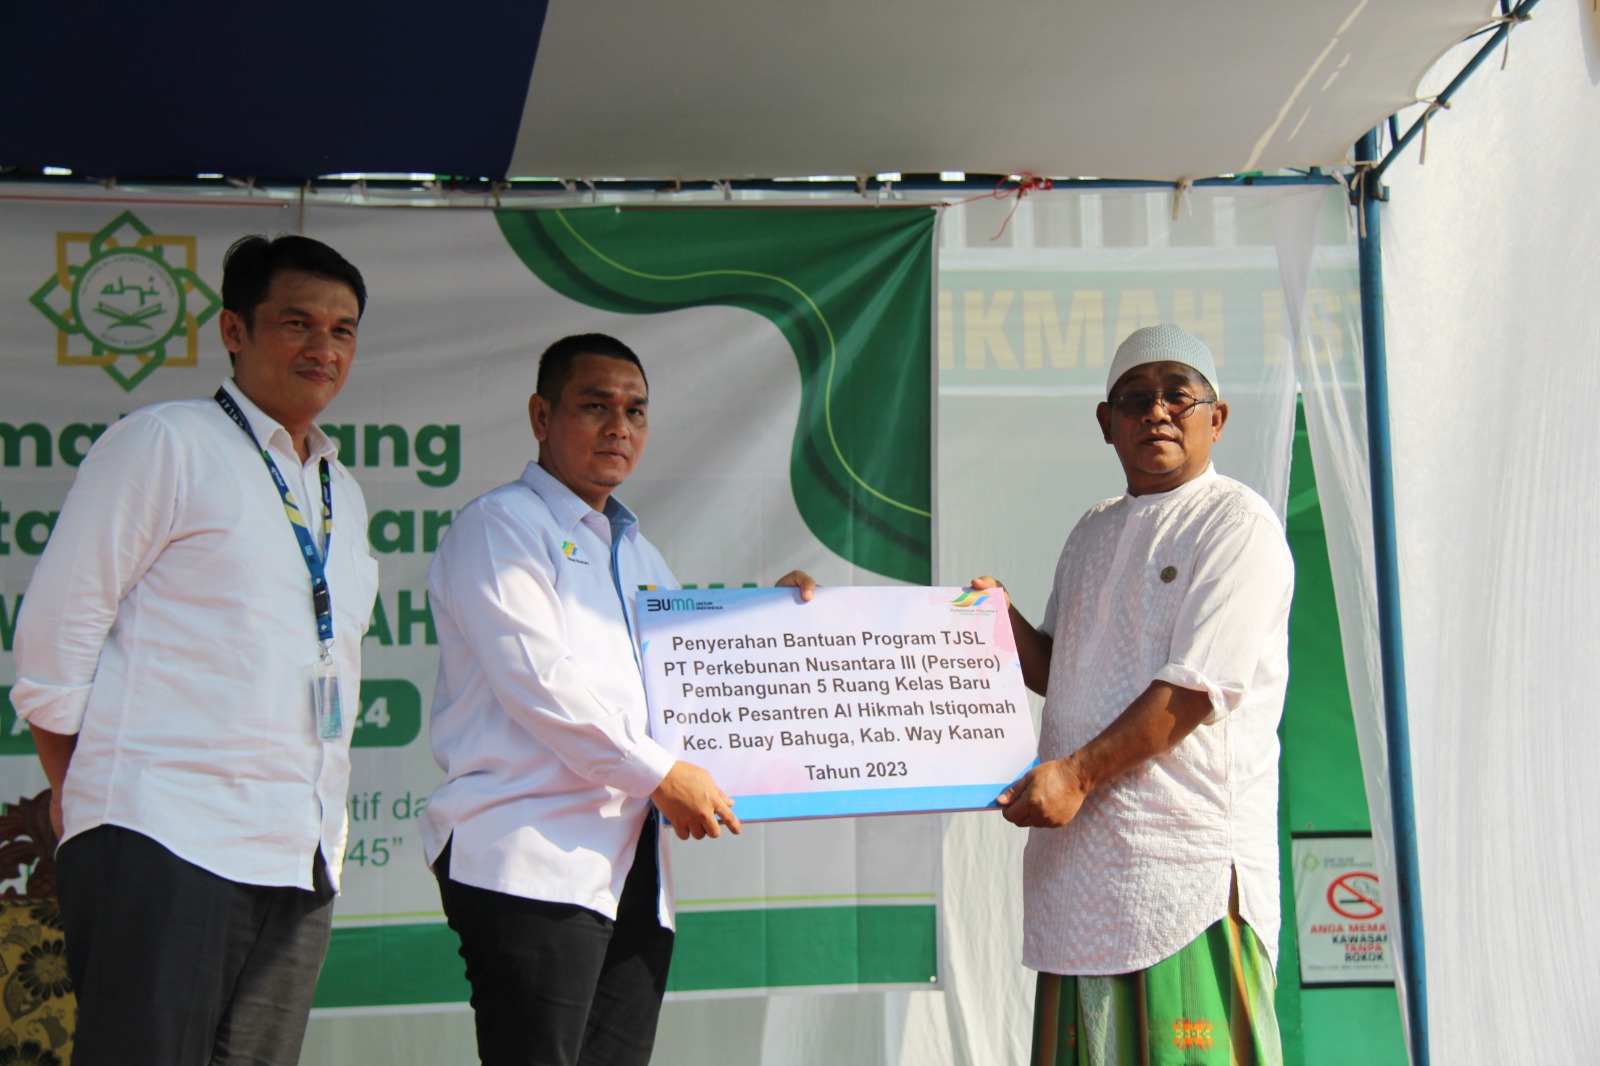 PTPN Grup Serahkan Bantuan 600 Juta Rupiah untuk Pondok Pesantren di Lampung   